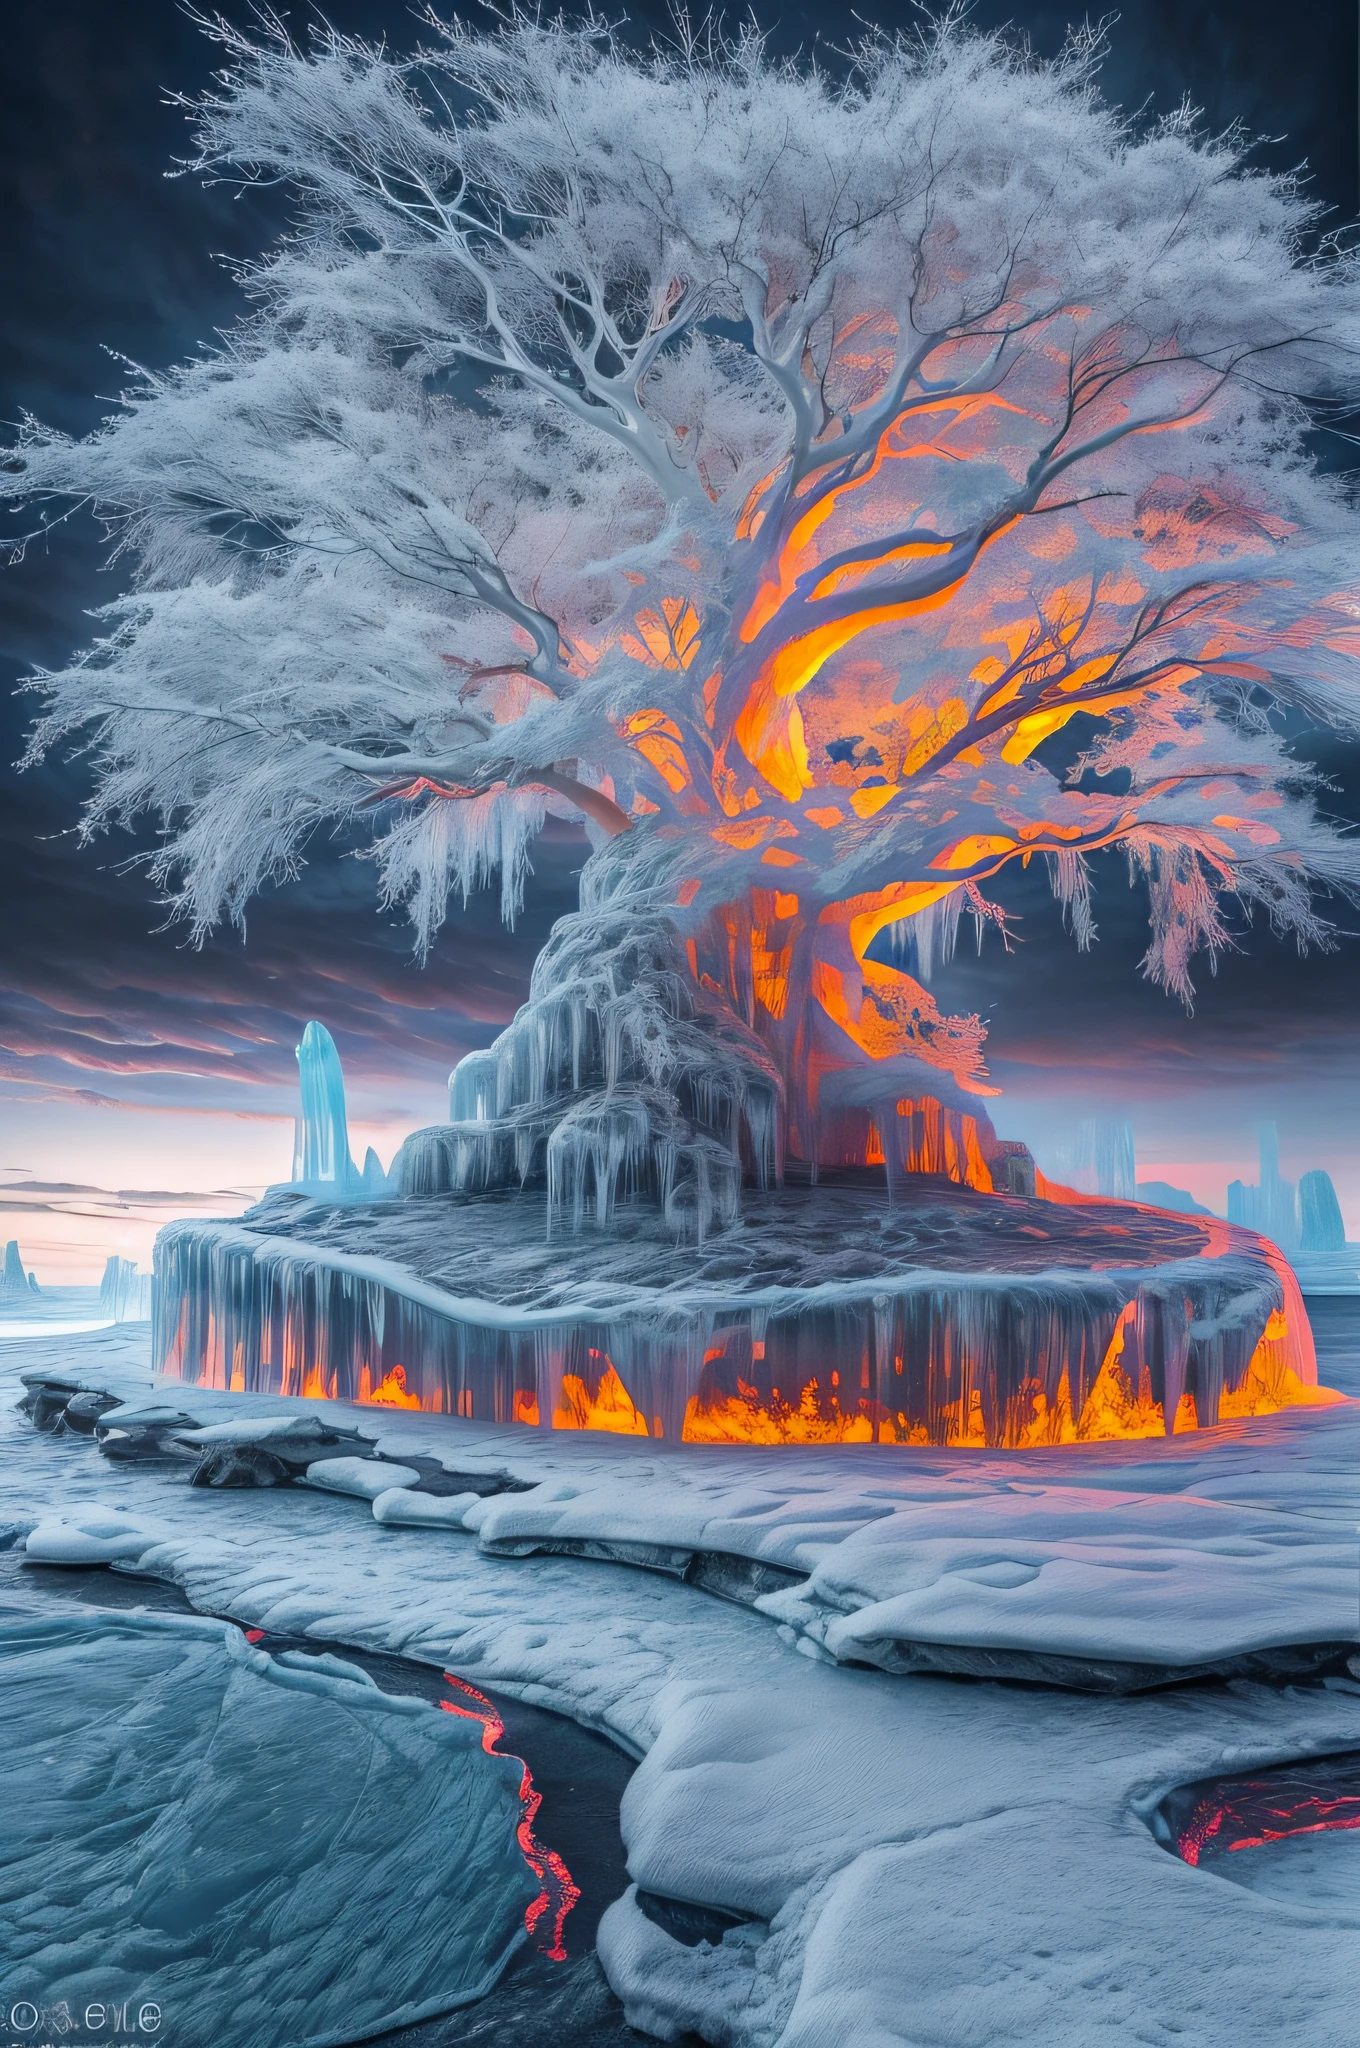 ประติมากรรมน้ำแข็ง of a an epic tree (ประติมากรรมน้ำแข็ง :1.5) , ยืนอยู่บนเกาะที่ล้อมรอบด้วยลำธาร (เพียงพอ: 1.2), คุณภาพดีที่สุด, 16ก, [มีรายละเอียดมาก], ผลงานชิ้นเอก, คุณภาพดีที่สุด, (มีรายละเอียดมาก), เต็มตัว, ถ่ายภาพมุมกว้างพิเศษ, เหมือนจริง